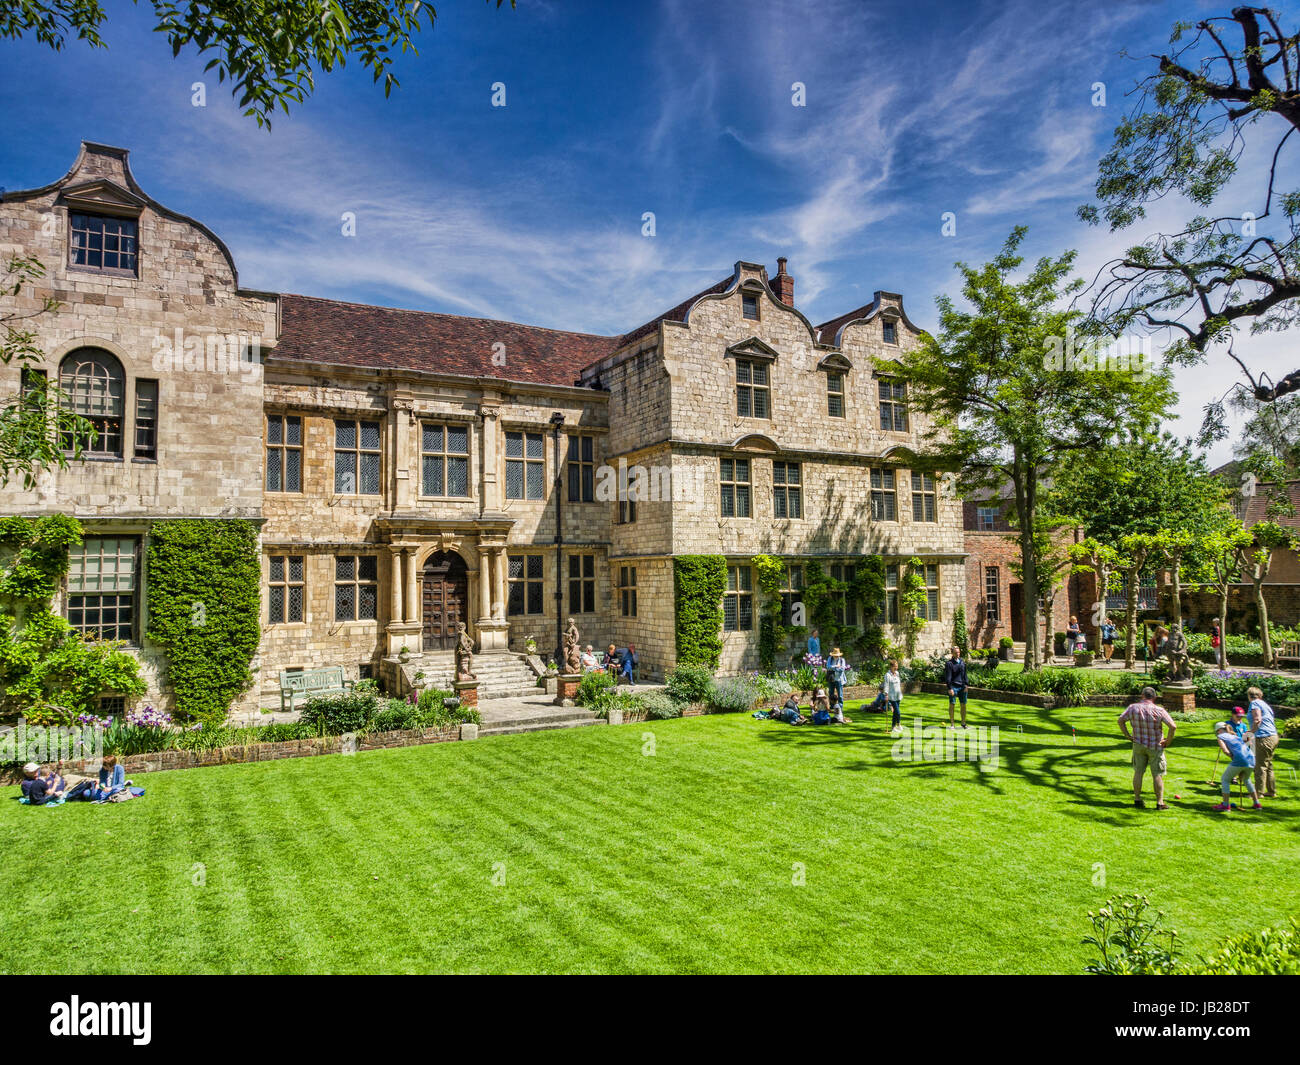 31 Maggio 2017: York, North Yorkshire, Wngland, Regno Unito - Camarlinghi House, con persone che giocano a croquet sul prato. Foto Stock